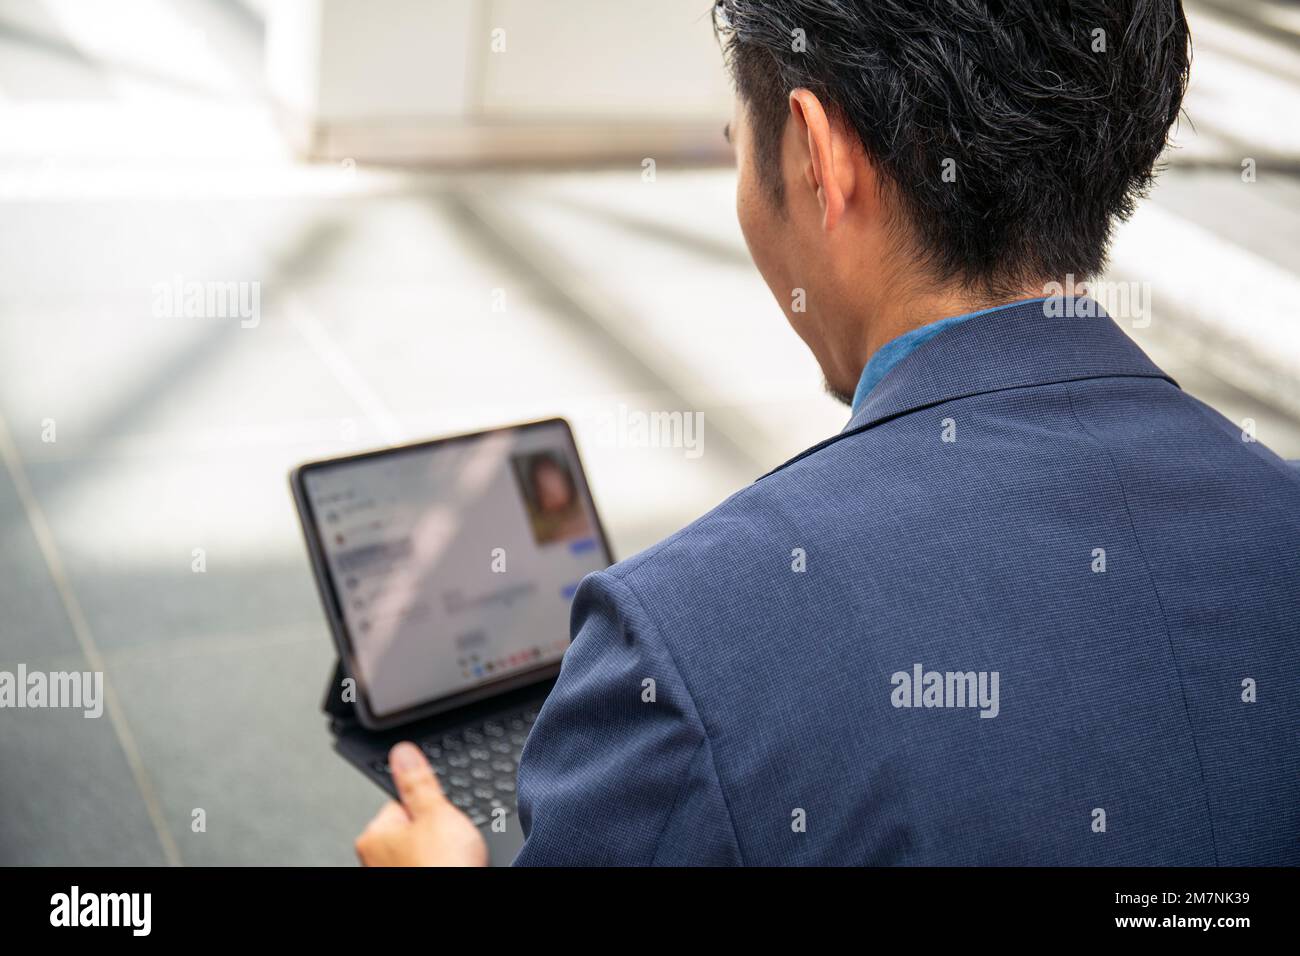 Ein junger Geschäftsmann in einem blauen Anzug, der unterwegs ist, in einer Innenstadt, sitzt auf einer Bank und benutzt ein digitales Tablet mit Bildschirm. Stockfoto